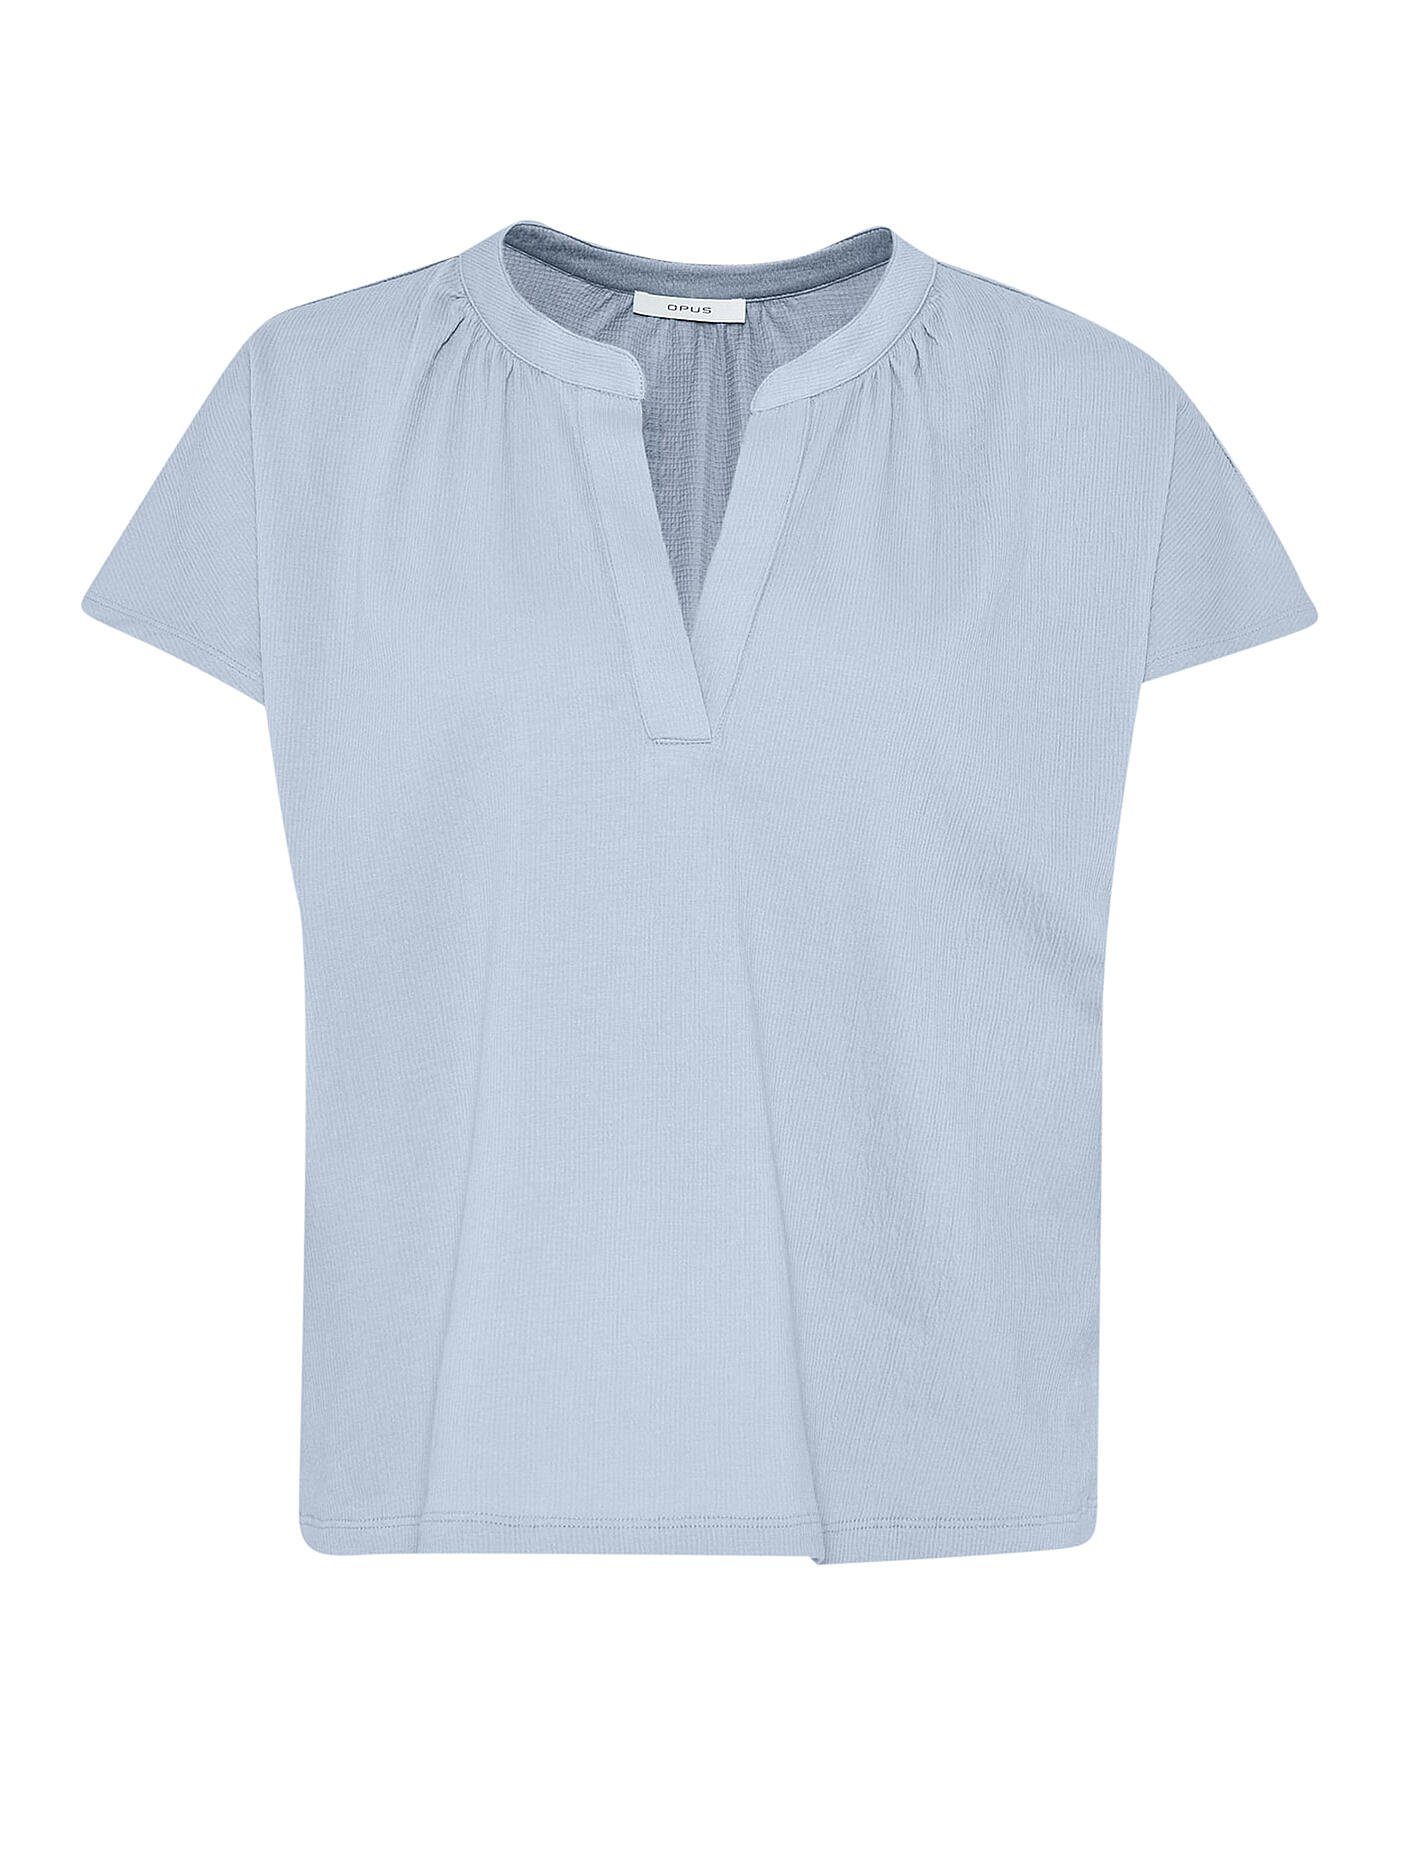 Blaue OPUS Shirts für Damen online kaufen | OTTO